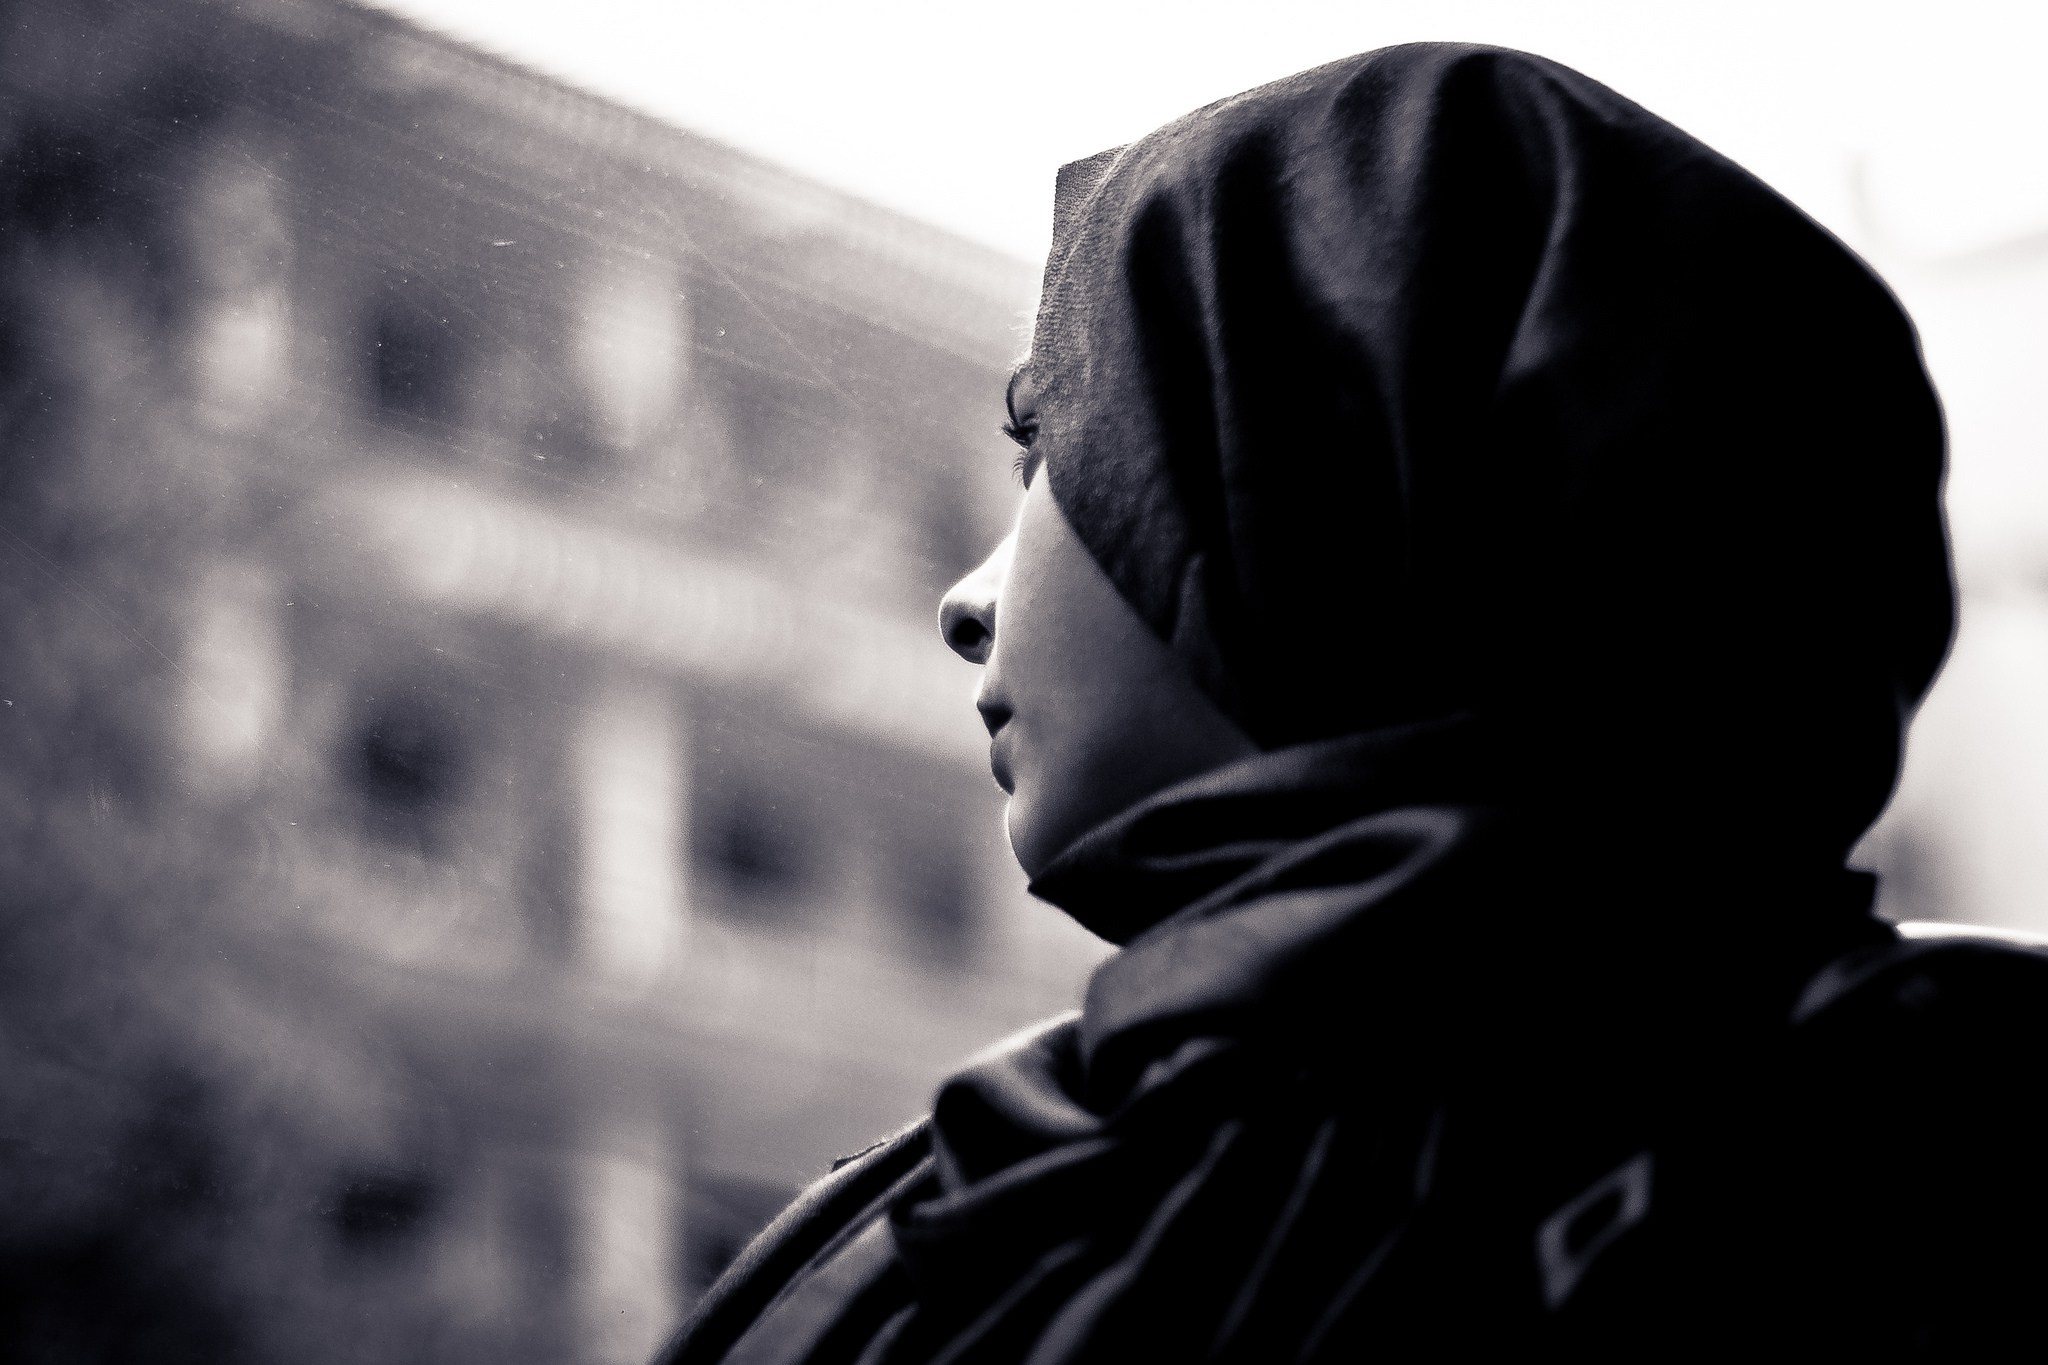 كاتبة صحفية: “الحجاب زي شعبي وليس فرض إسلامي”